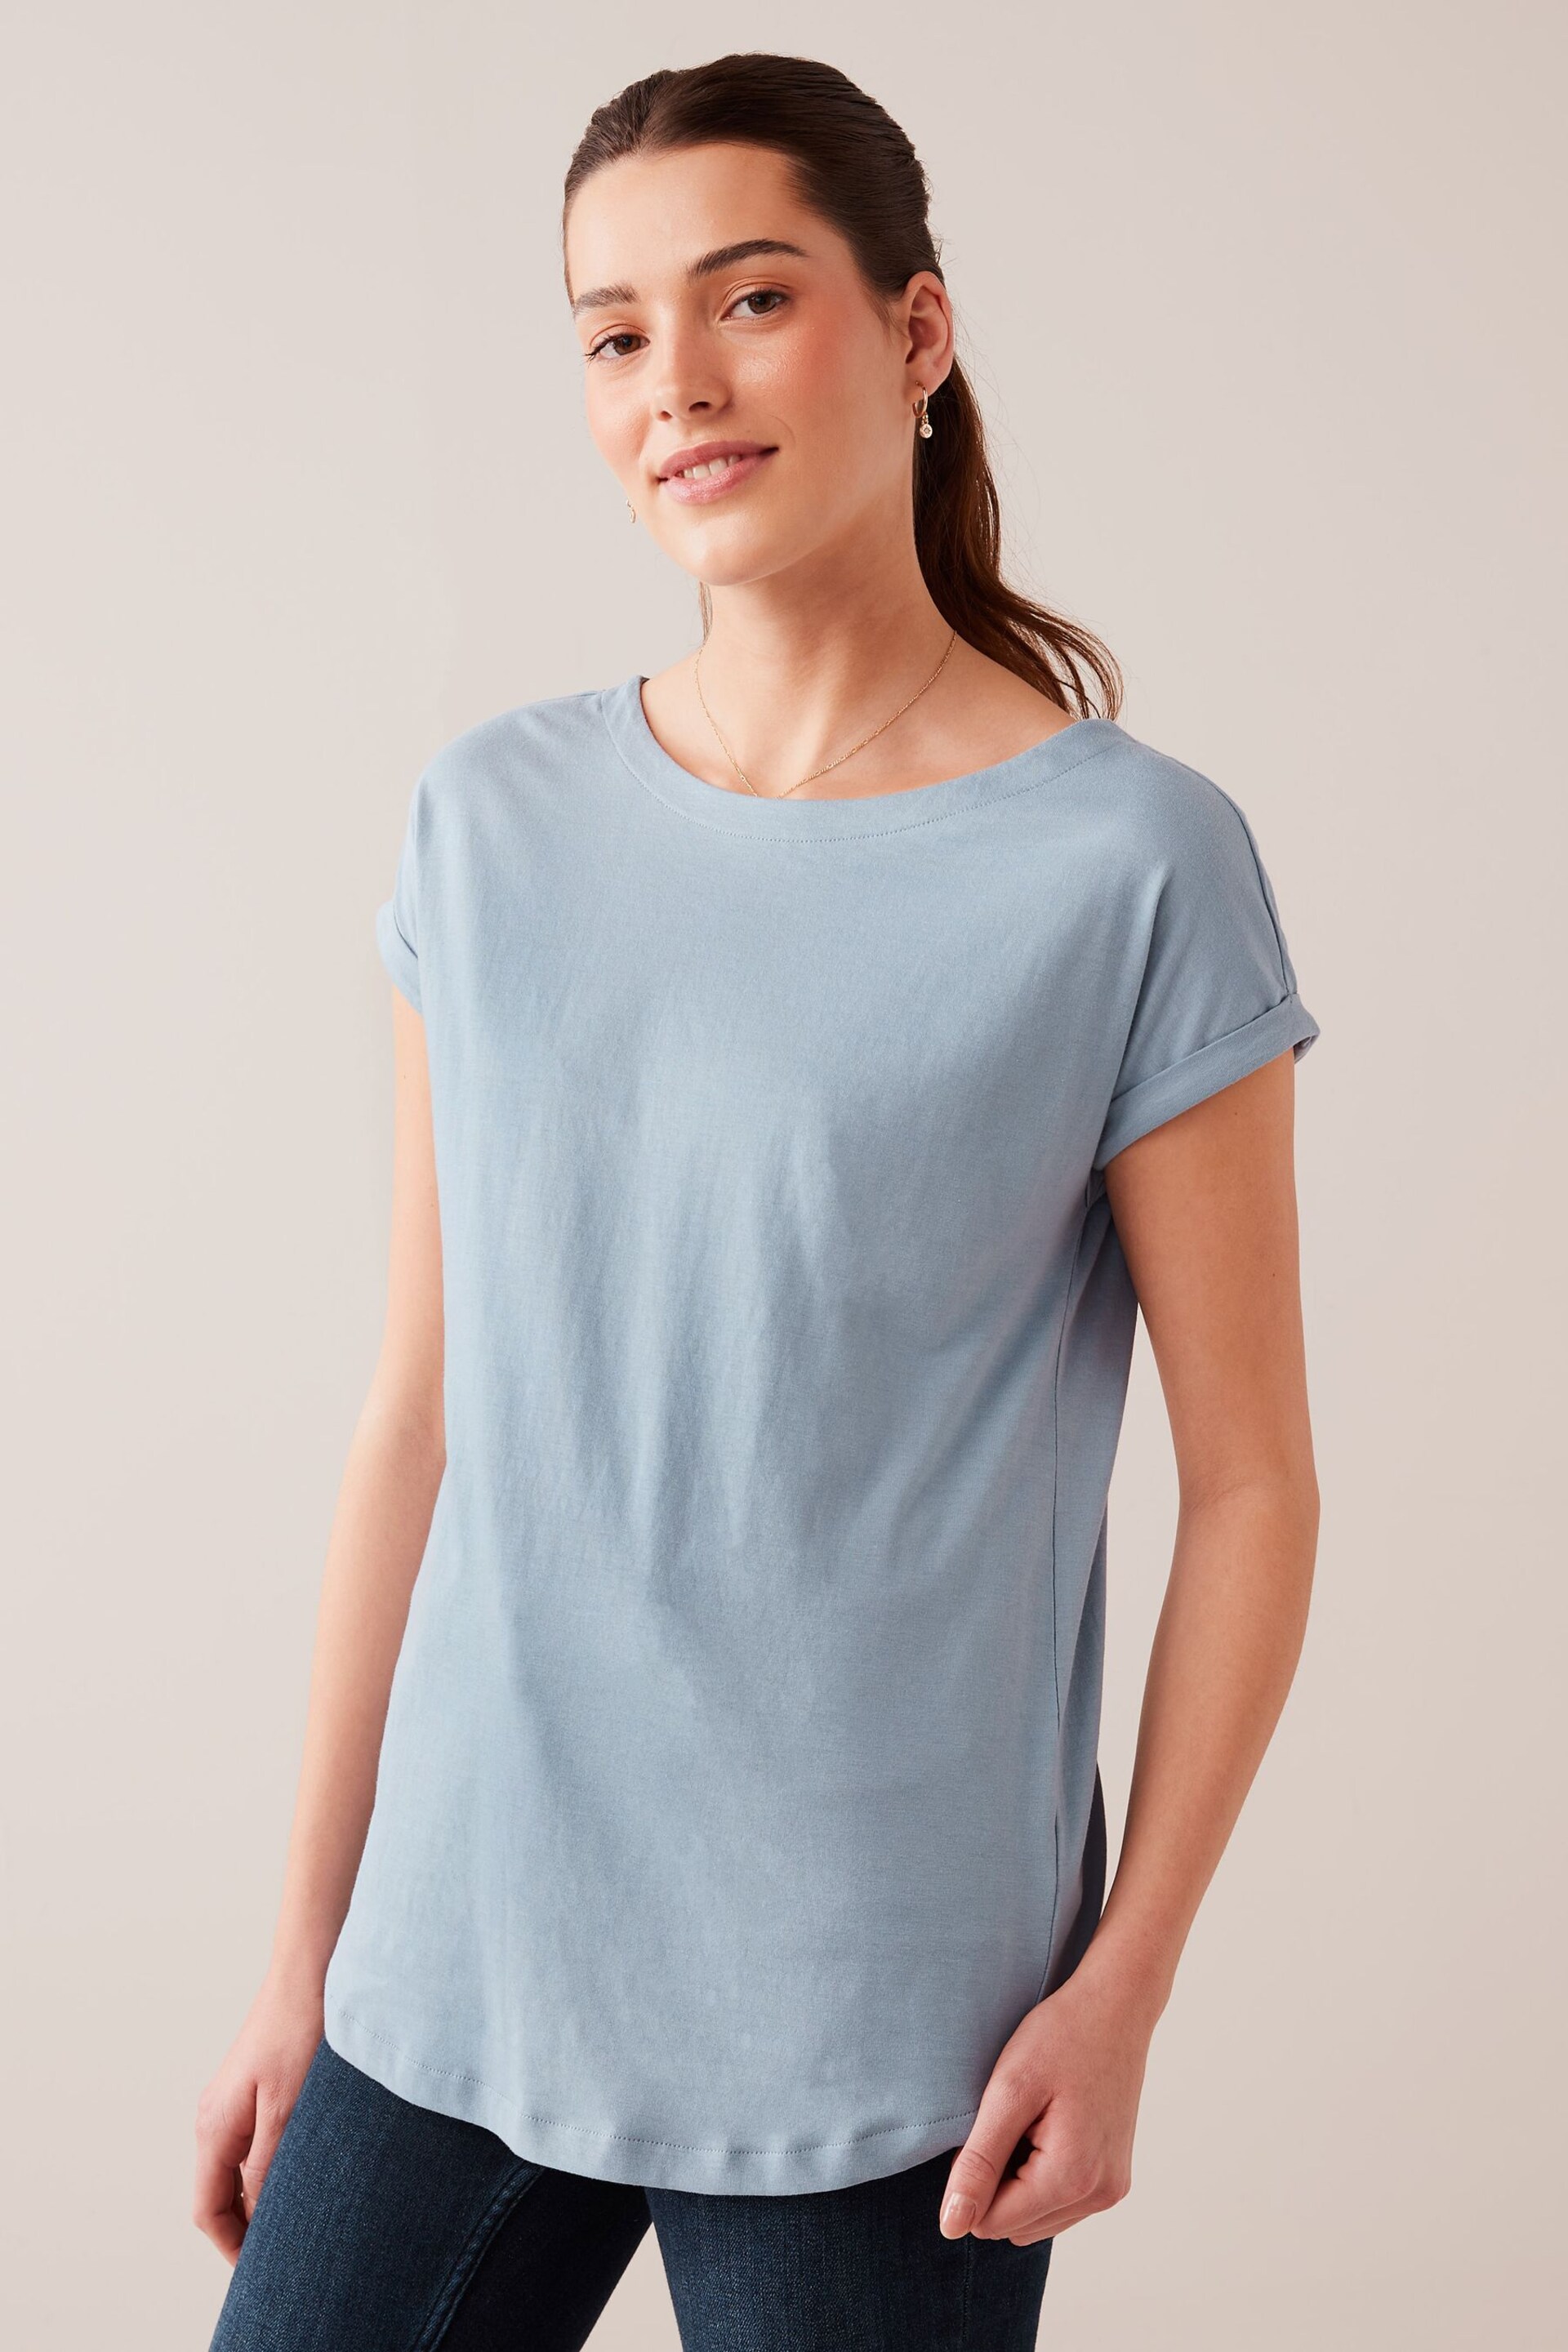 Dusky Blue Round Neck Cap Sleeve T-Shirt - Image 1 of 5